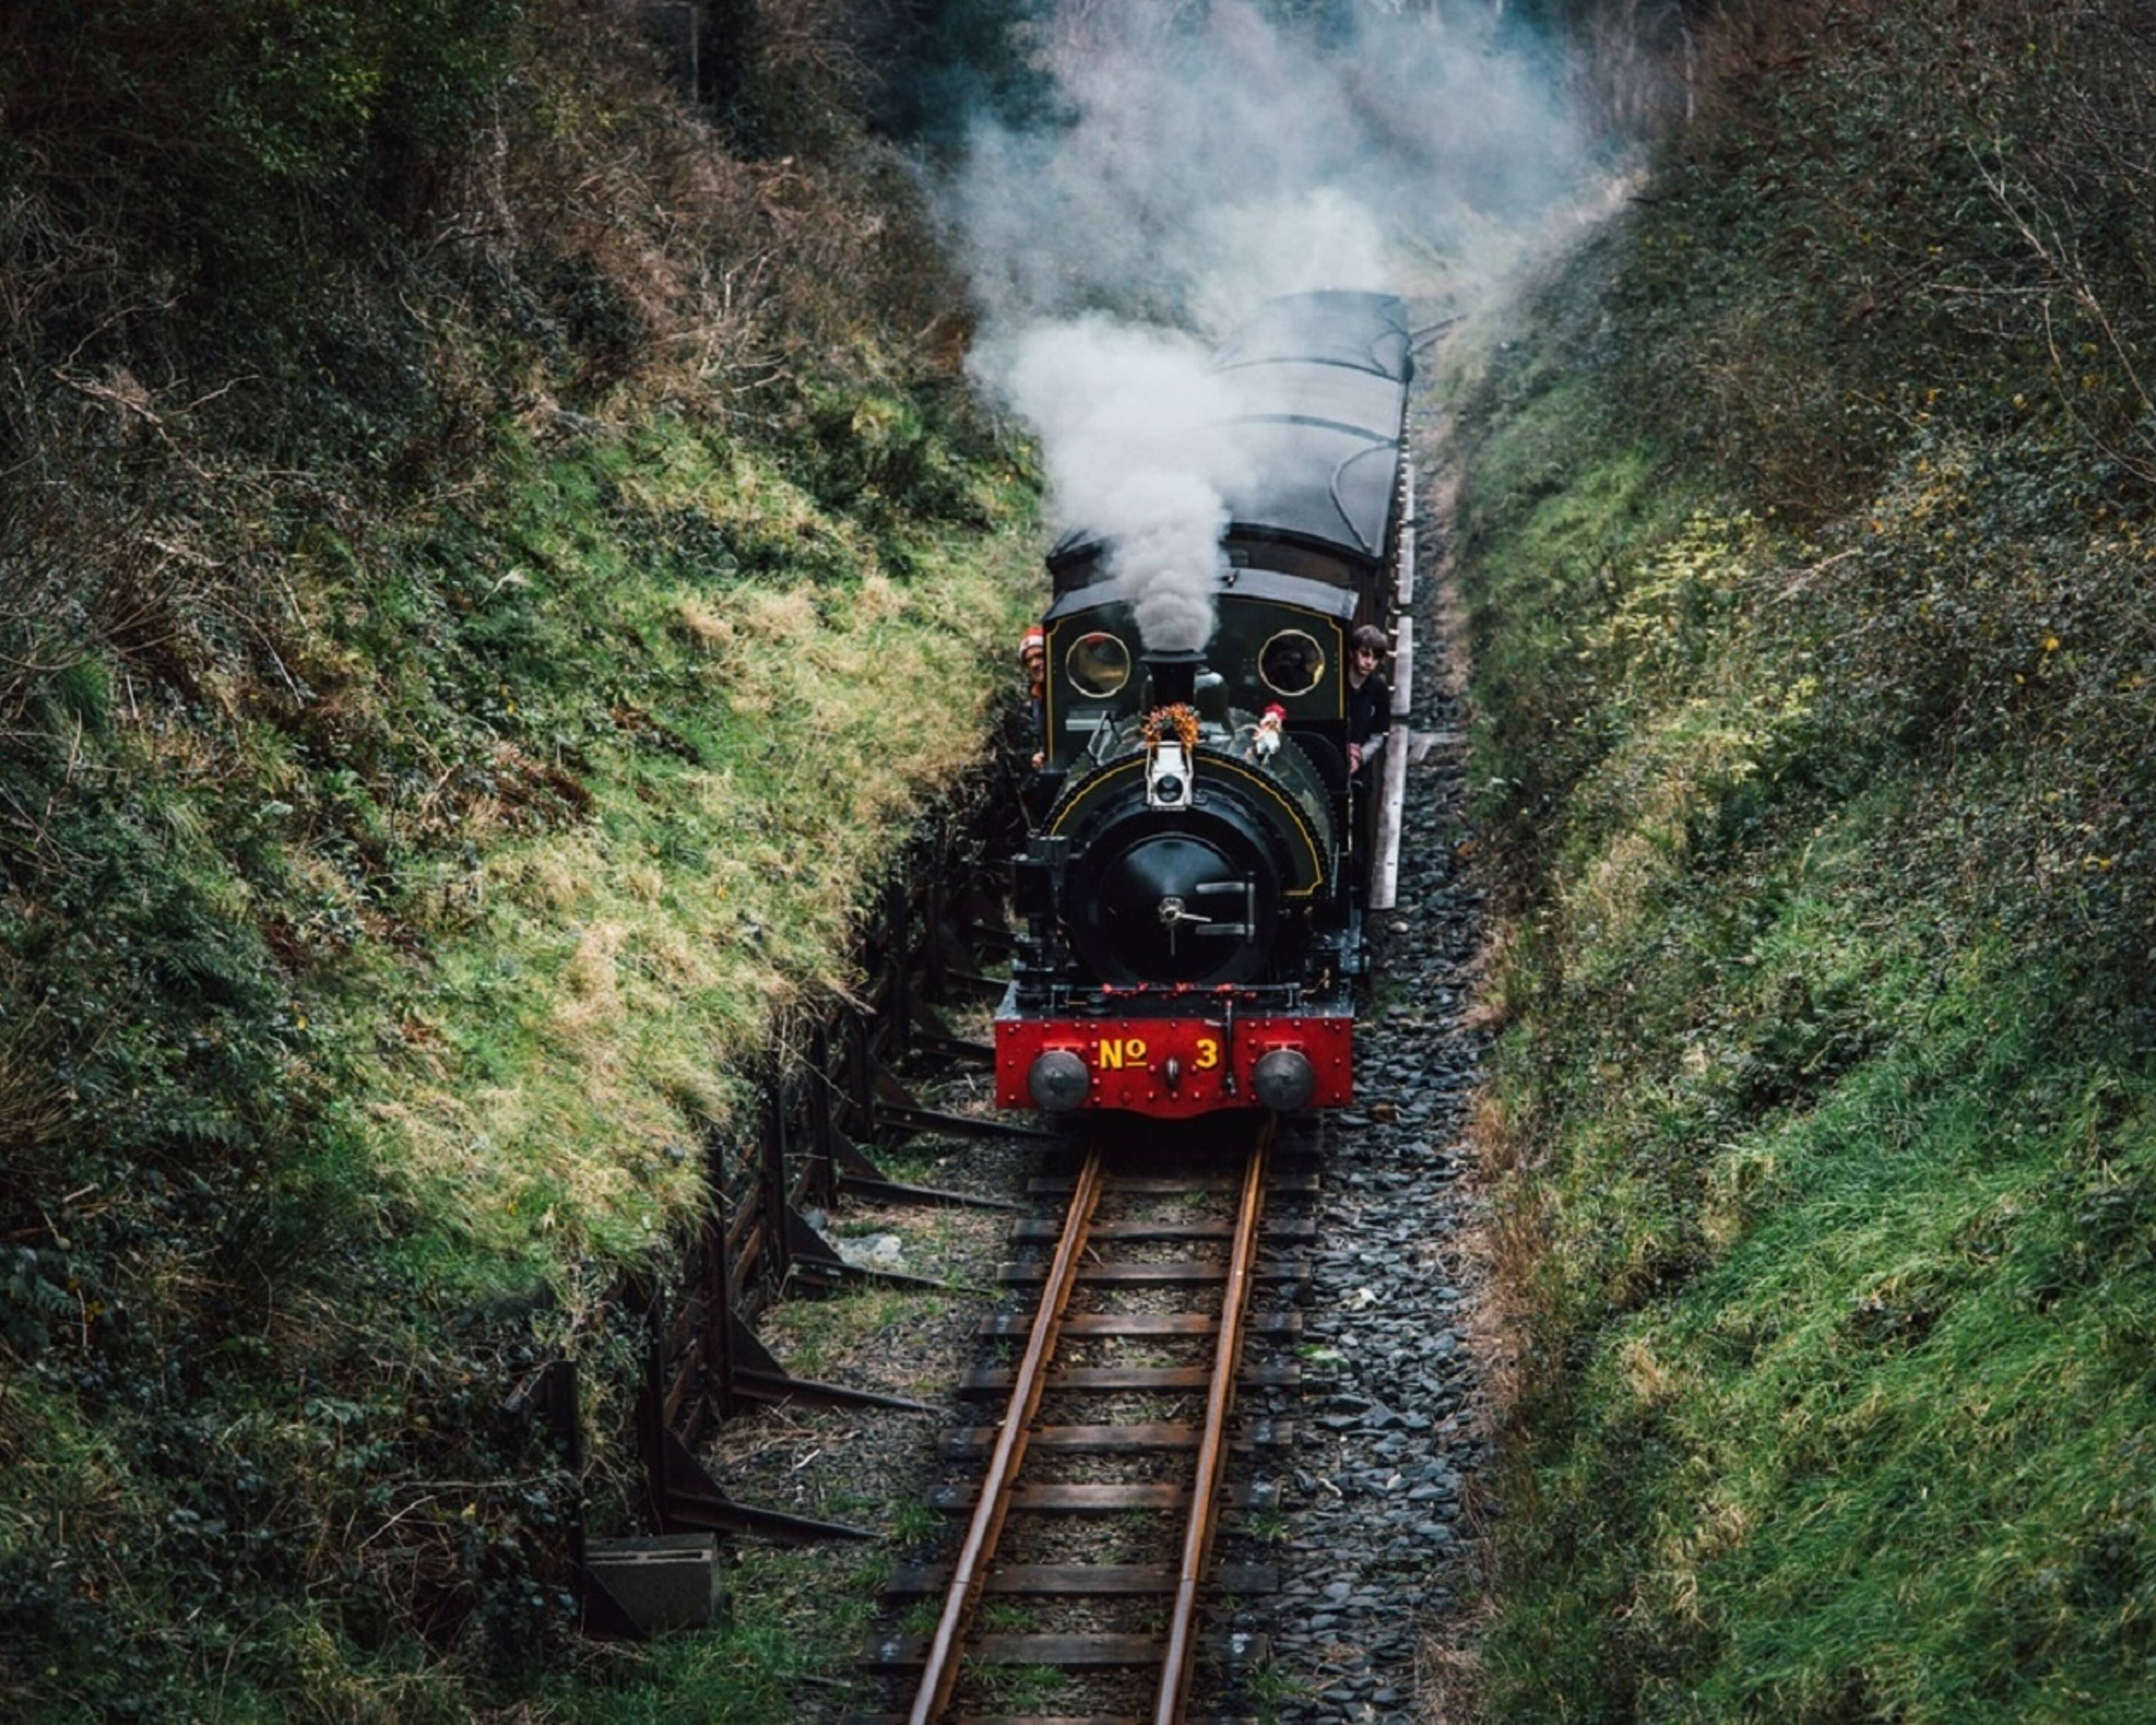 Le Pays de Galles en famille, entre légende du roi Arthur et trains à vapeur